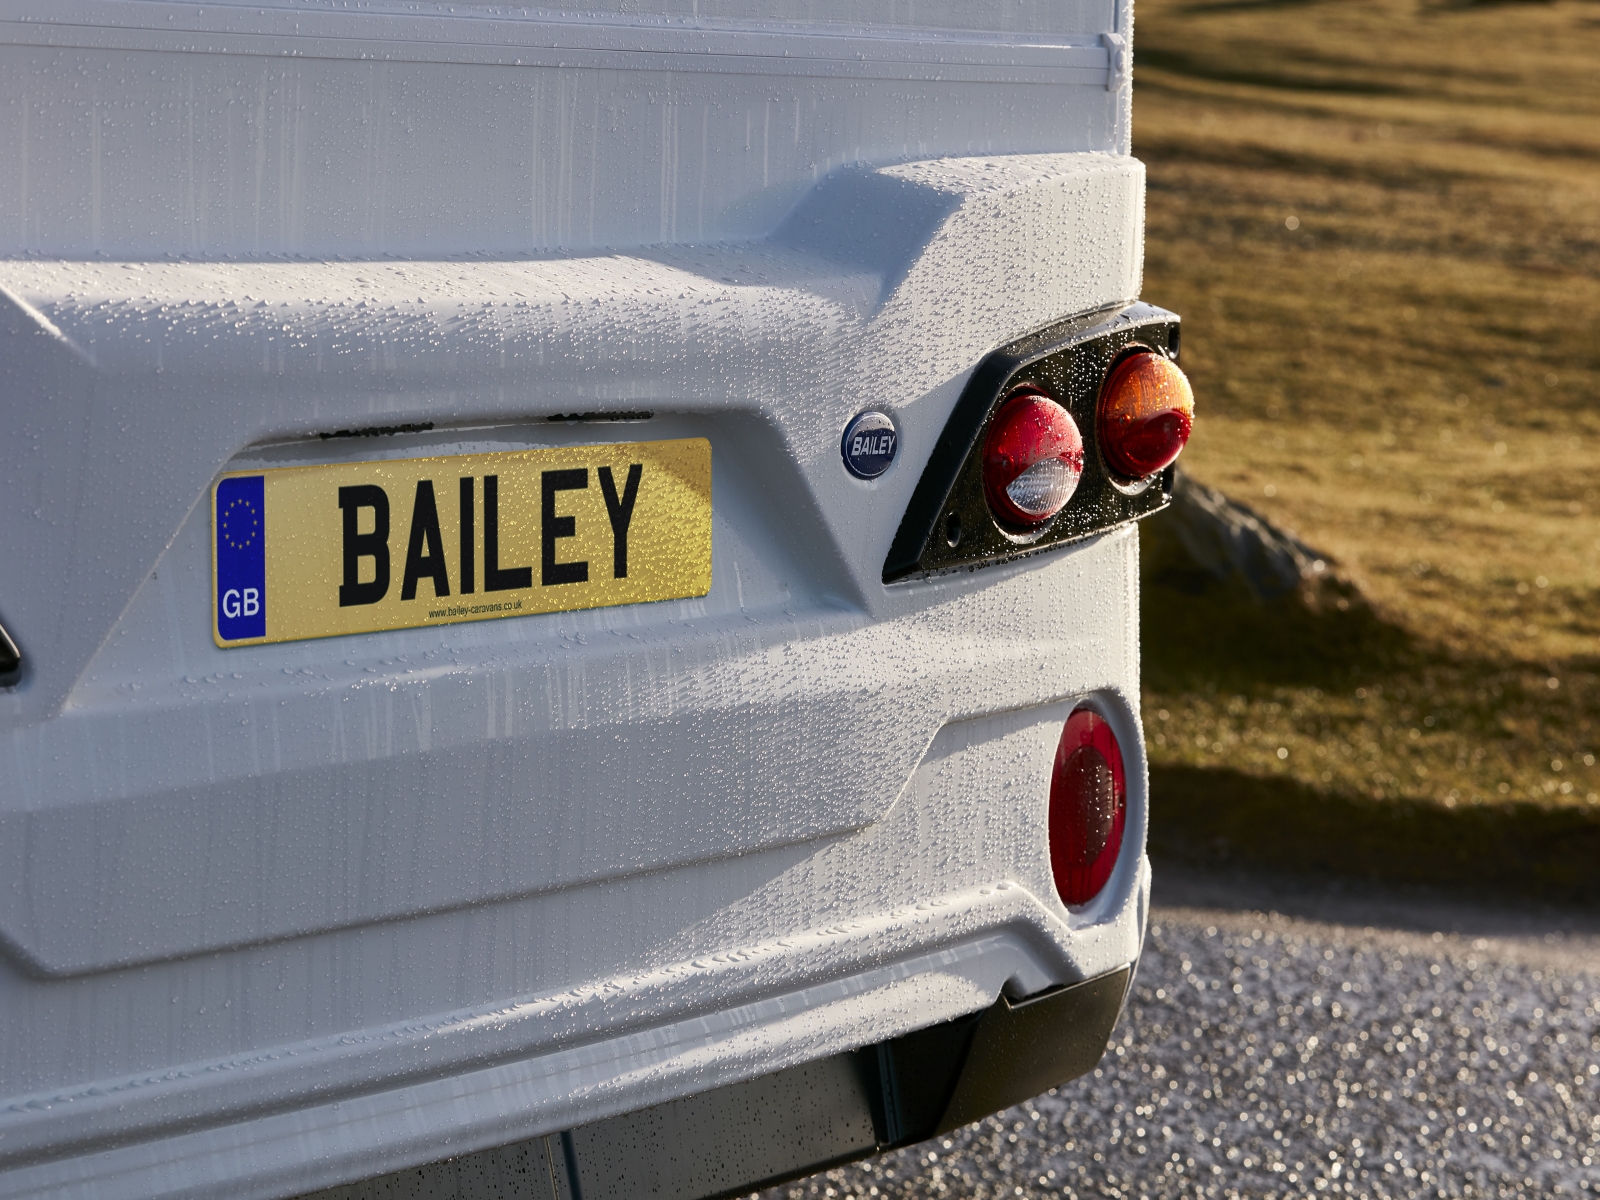 Bailey 70-6 image